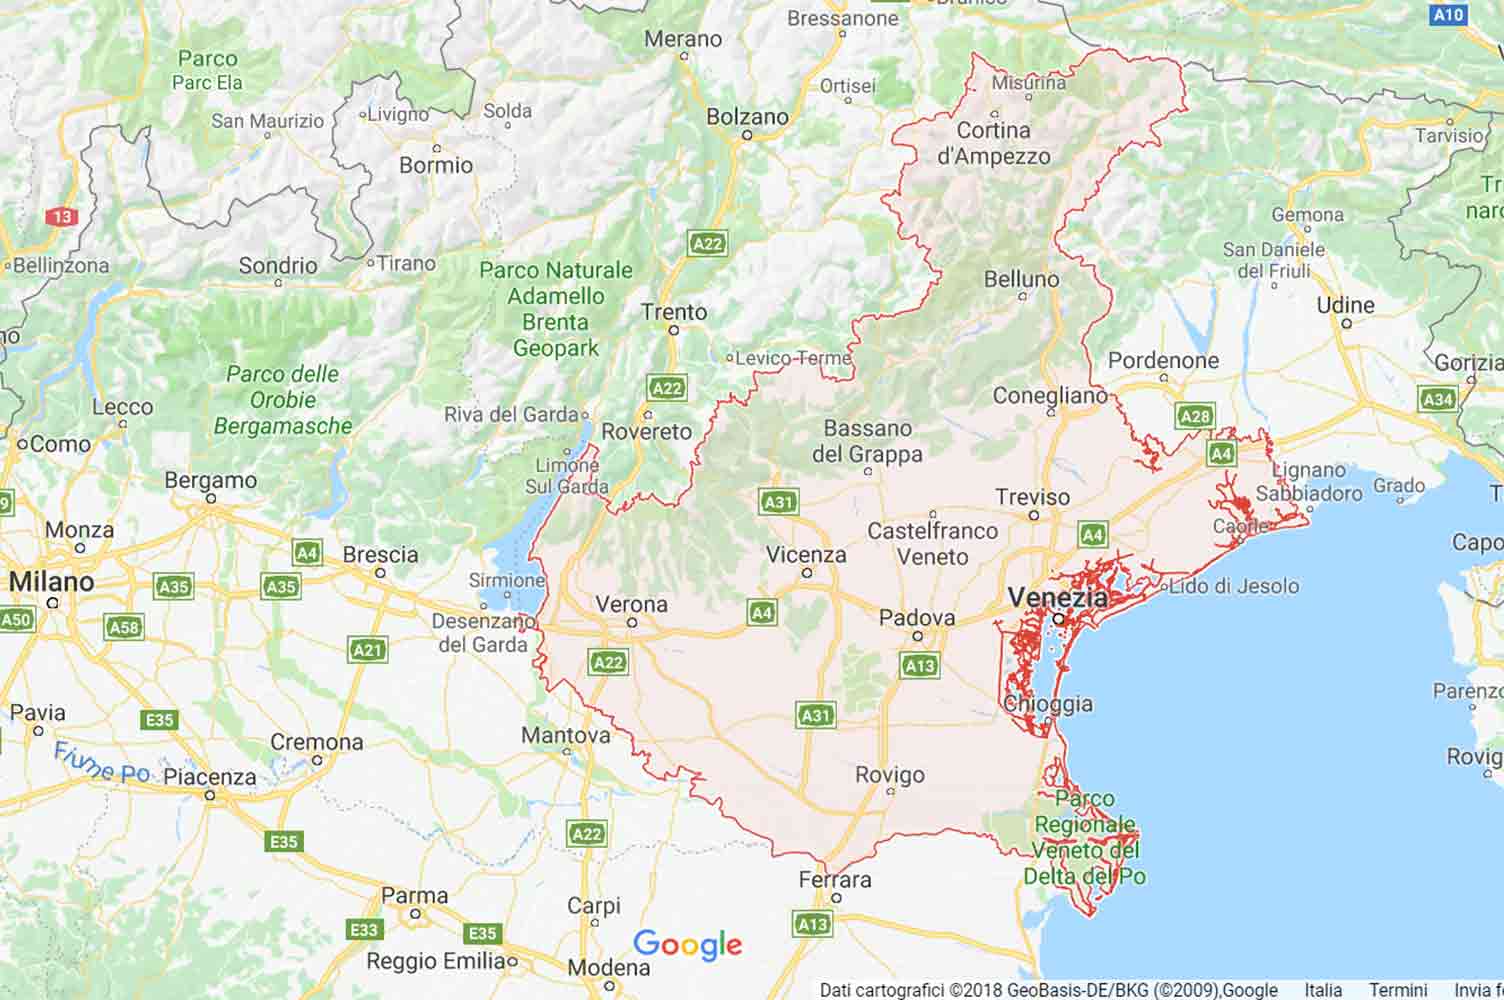 Veneto - Padova - Carmignano di Brenta Preventivi Veloci google maps